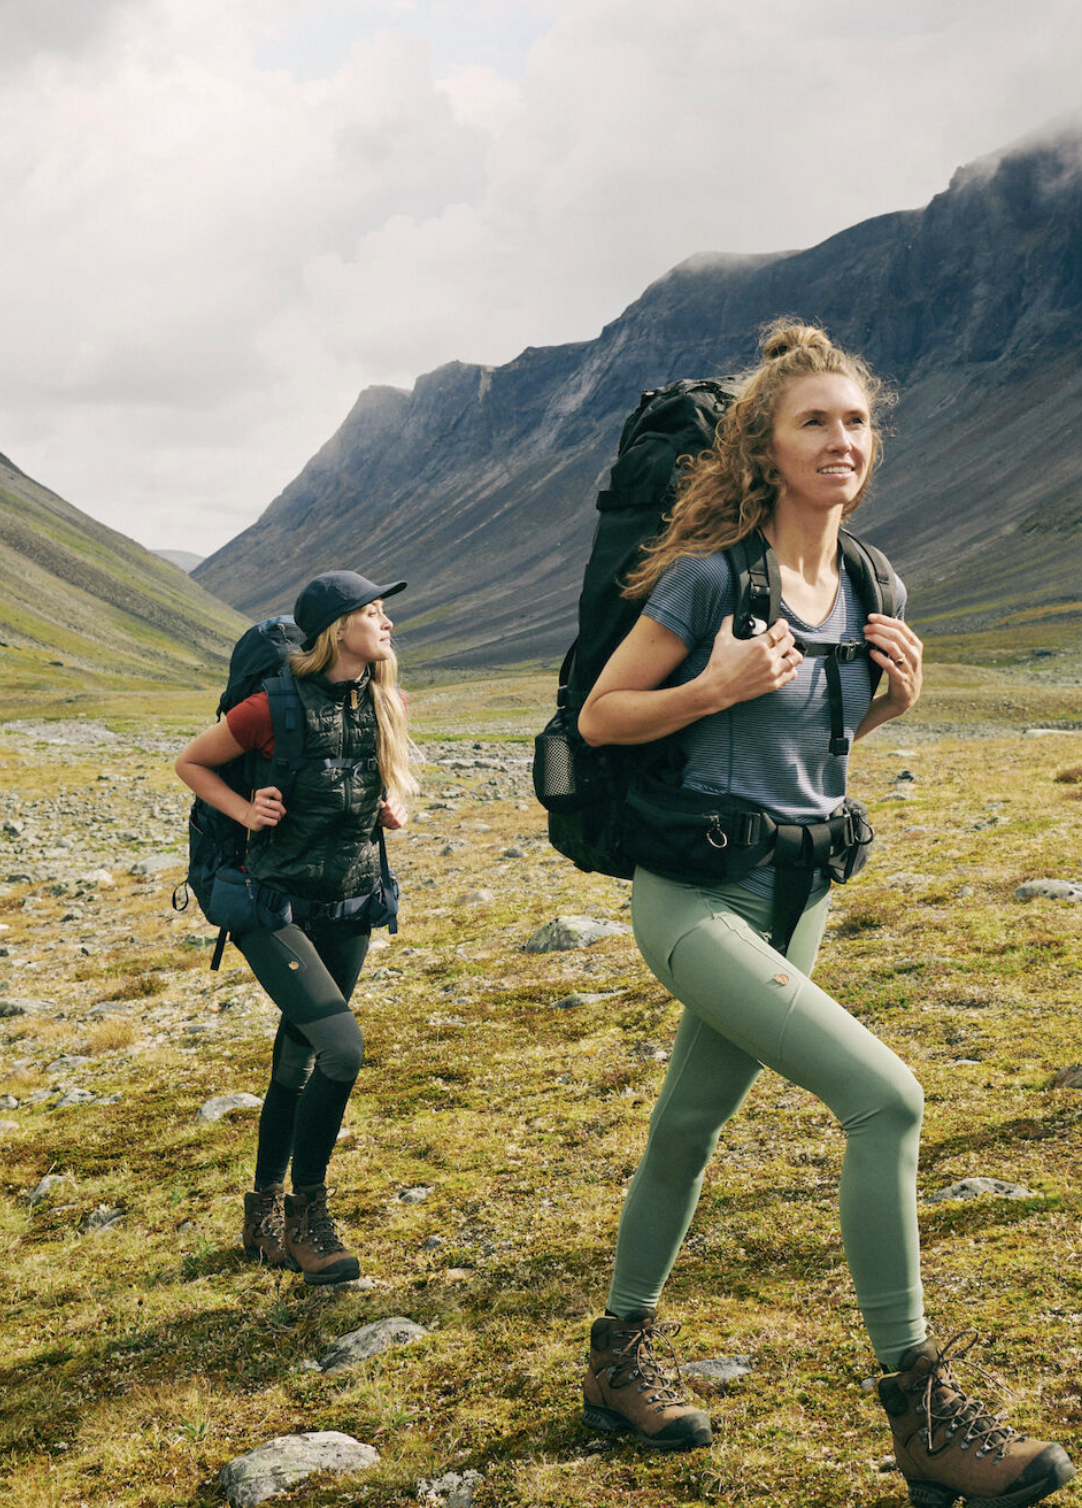 Fjällräven Abisko Trekking Tights Pro: The Best Women's Trekking Tights